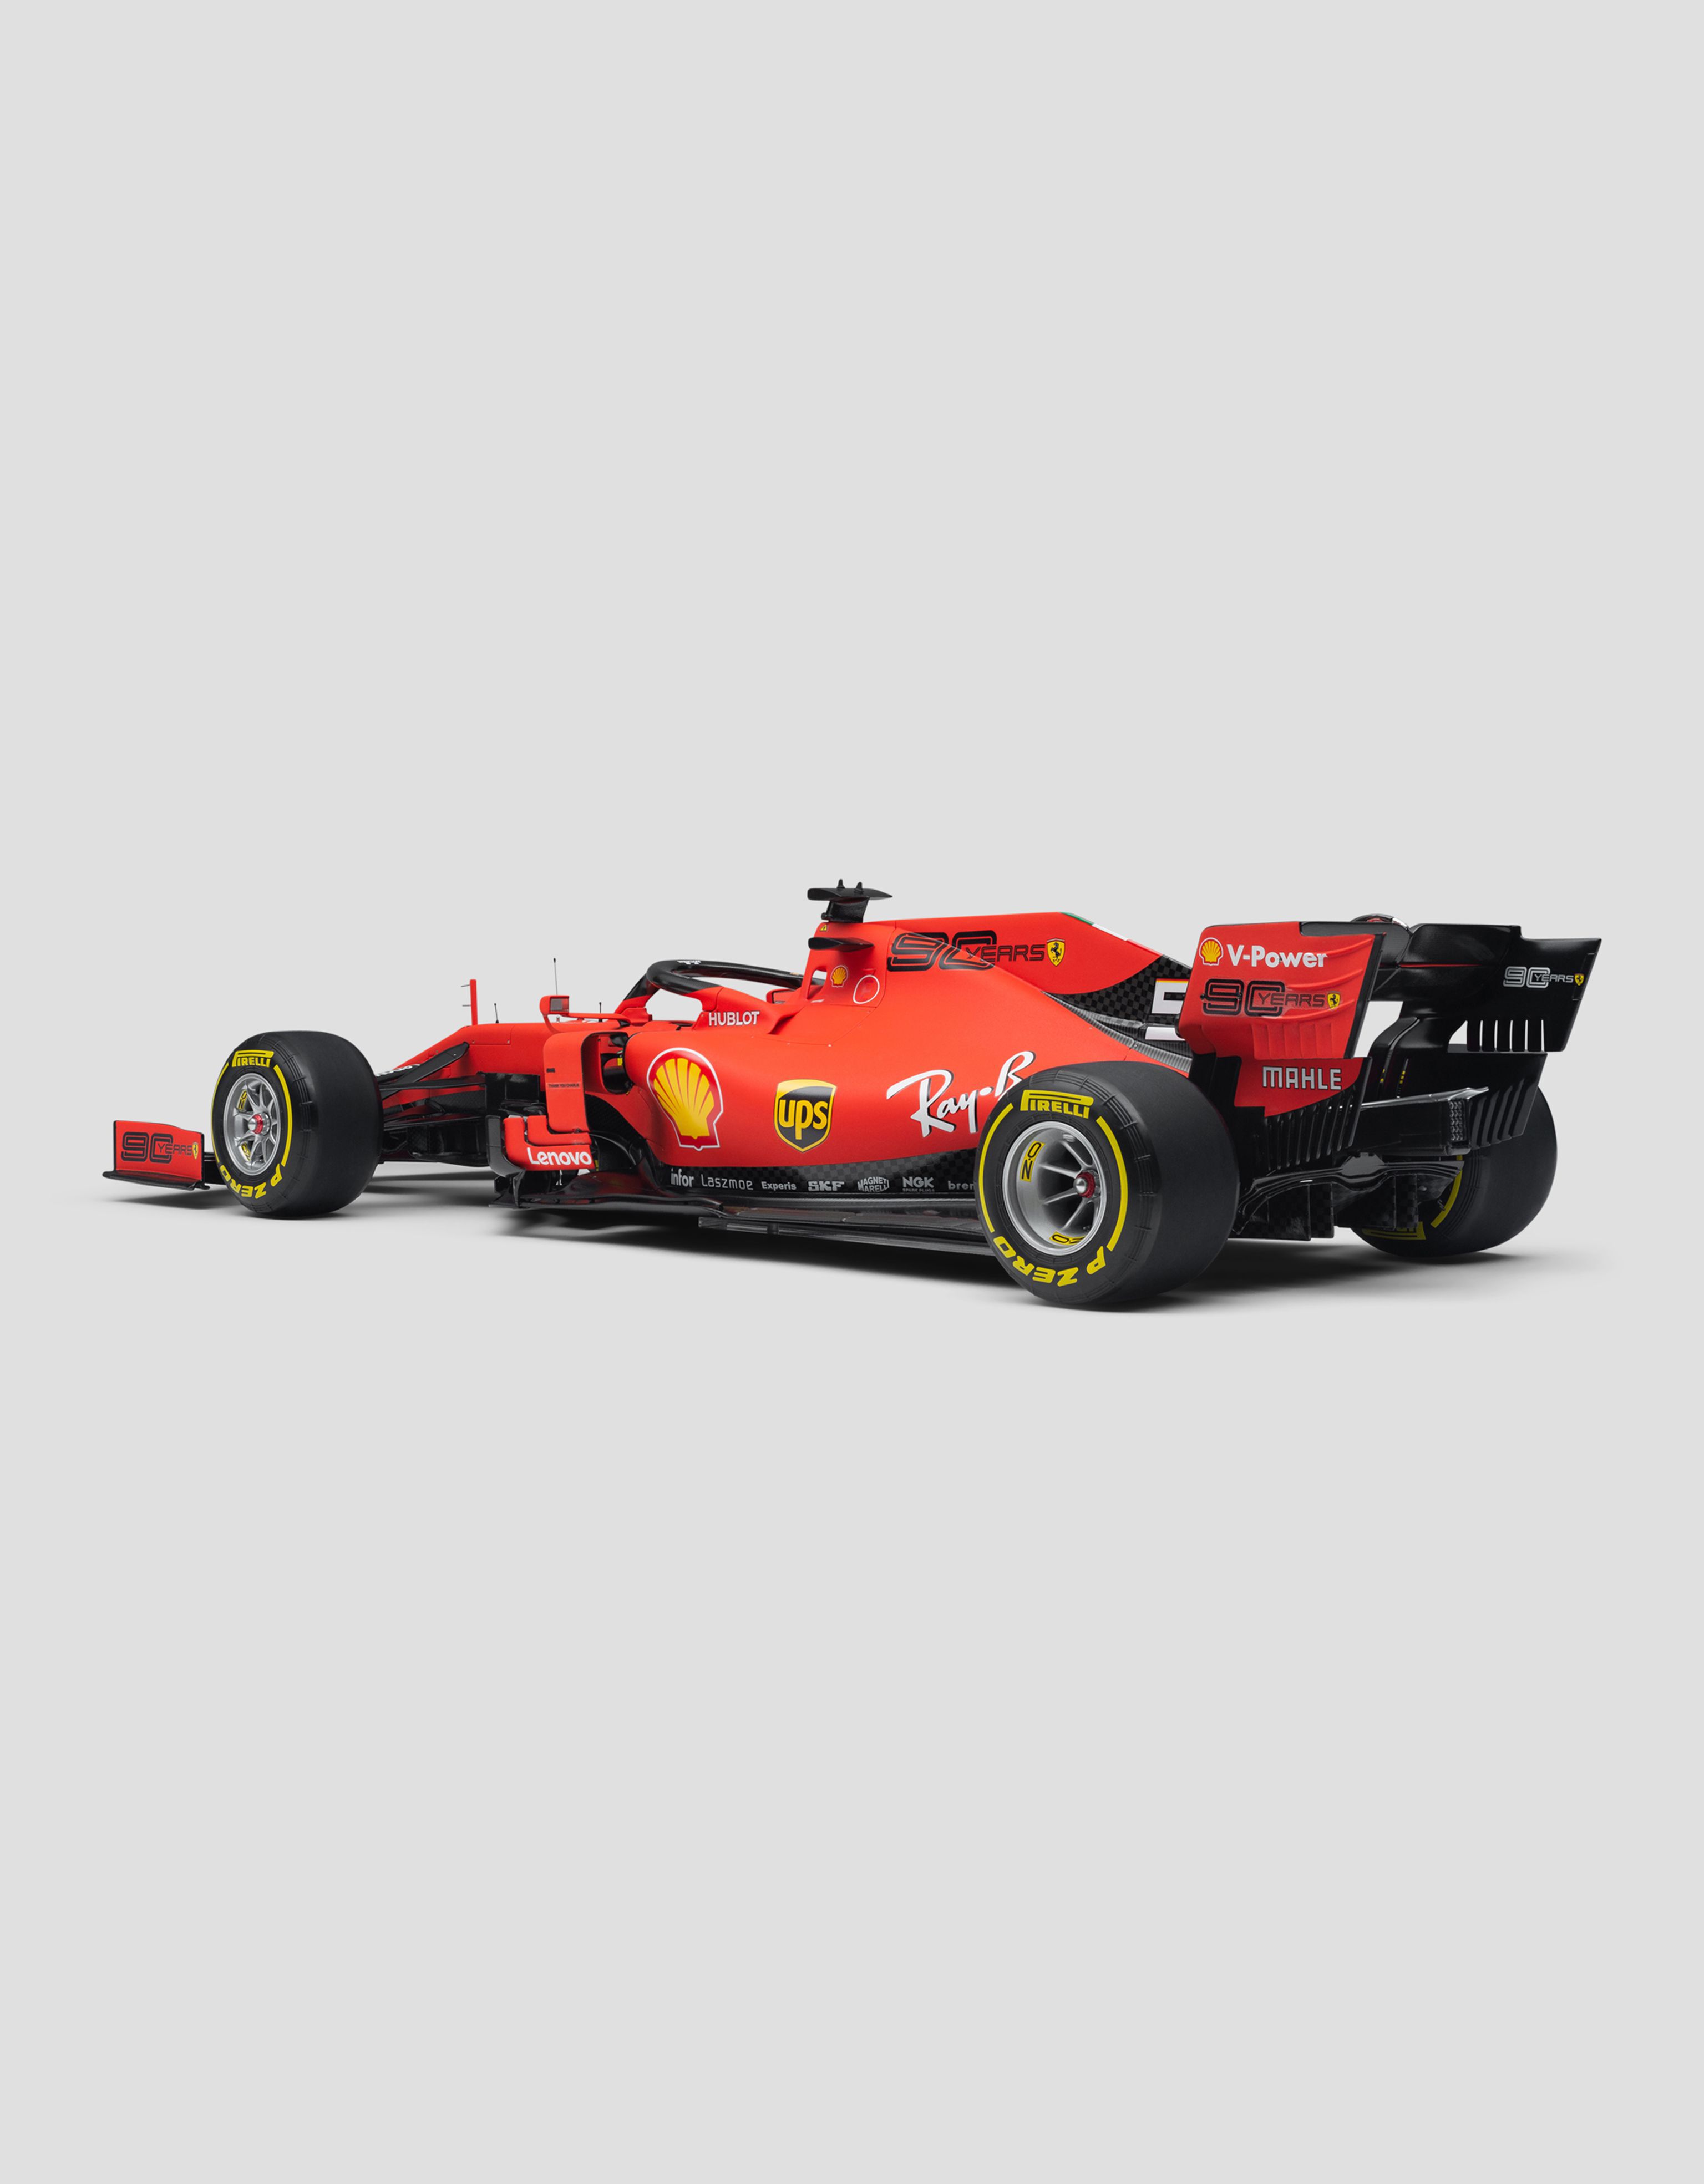 Ferrari Ferrari SF90 Vettel model in 1:8 scale Red L7981f